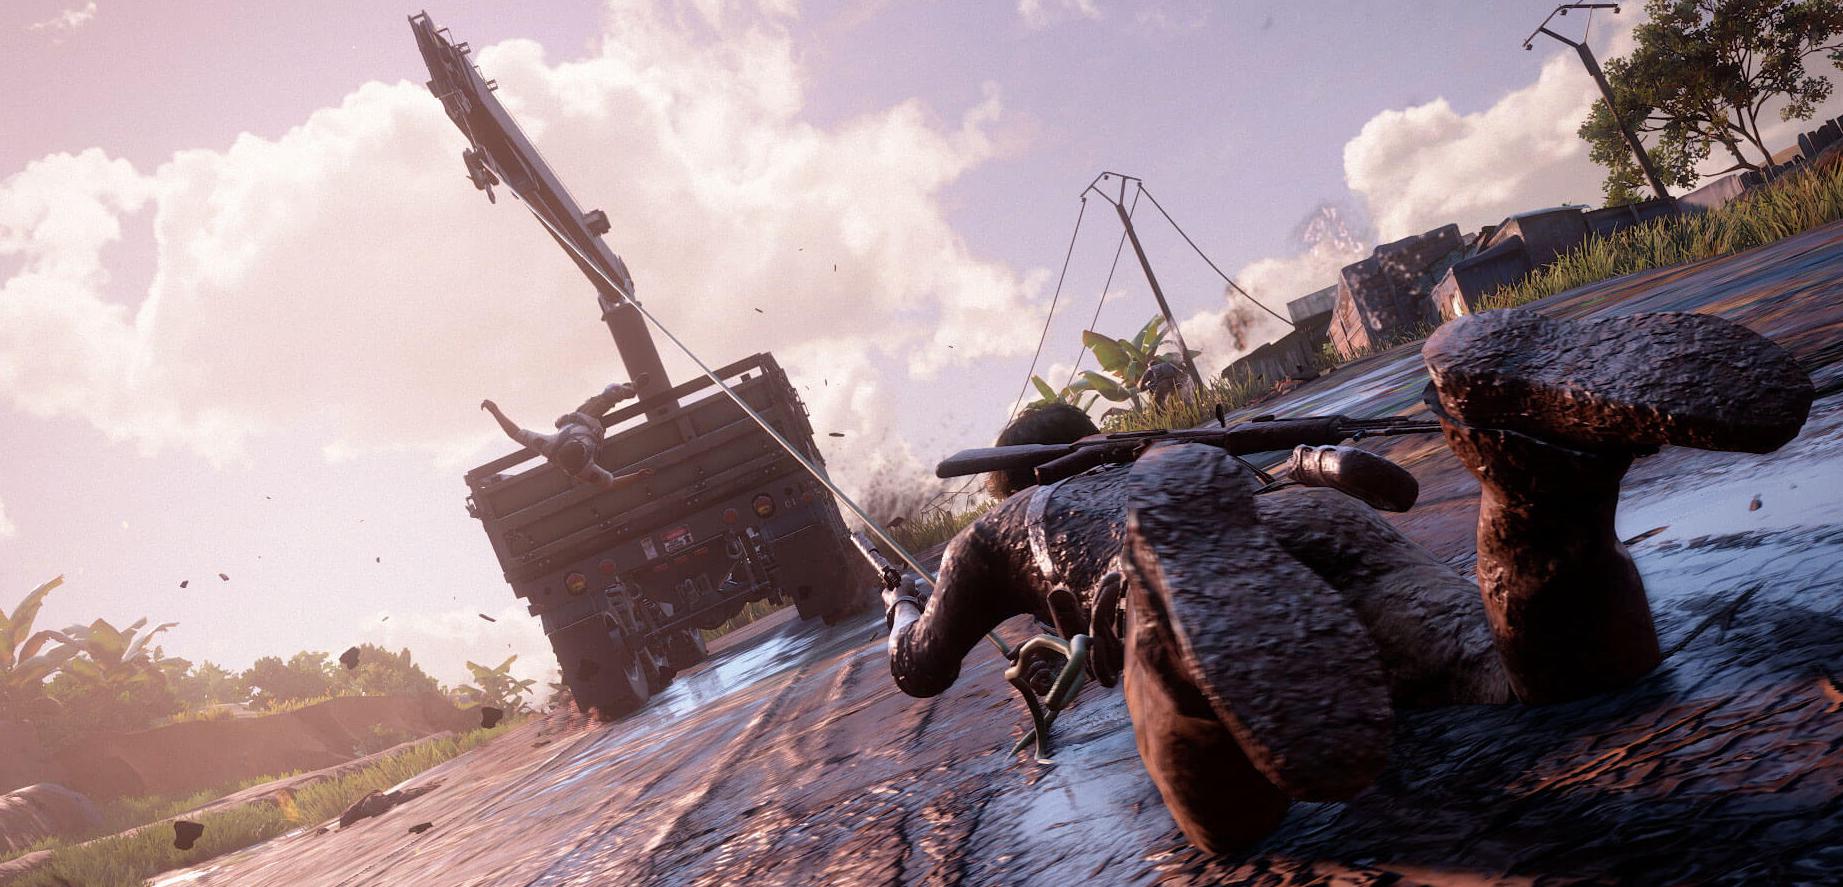 Uncharted 4 rozesłane do niektórych graczy 2 tygodnie przed premierą